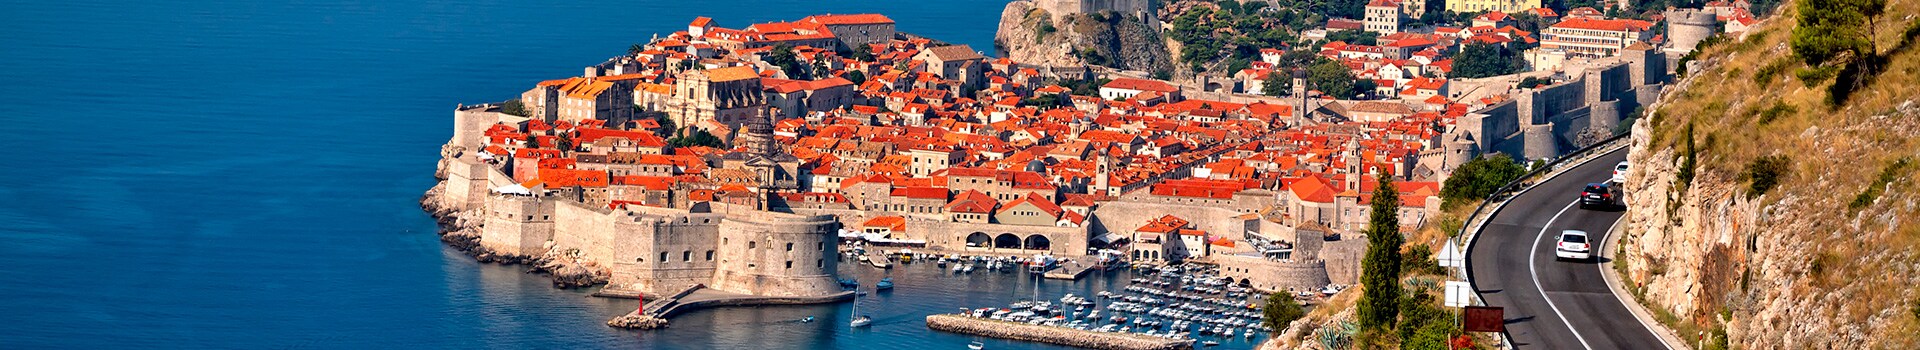 Brindisi - Dubrovnik